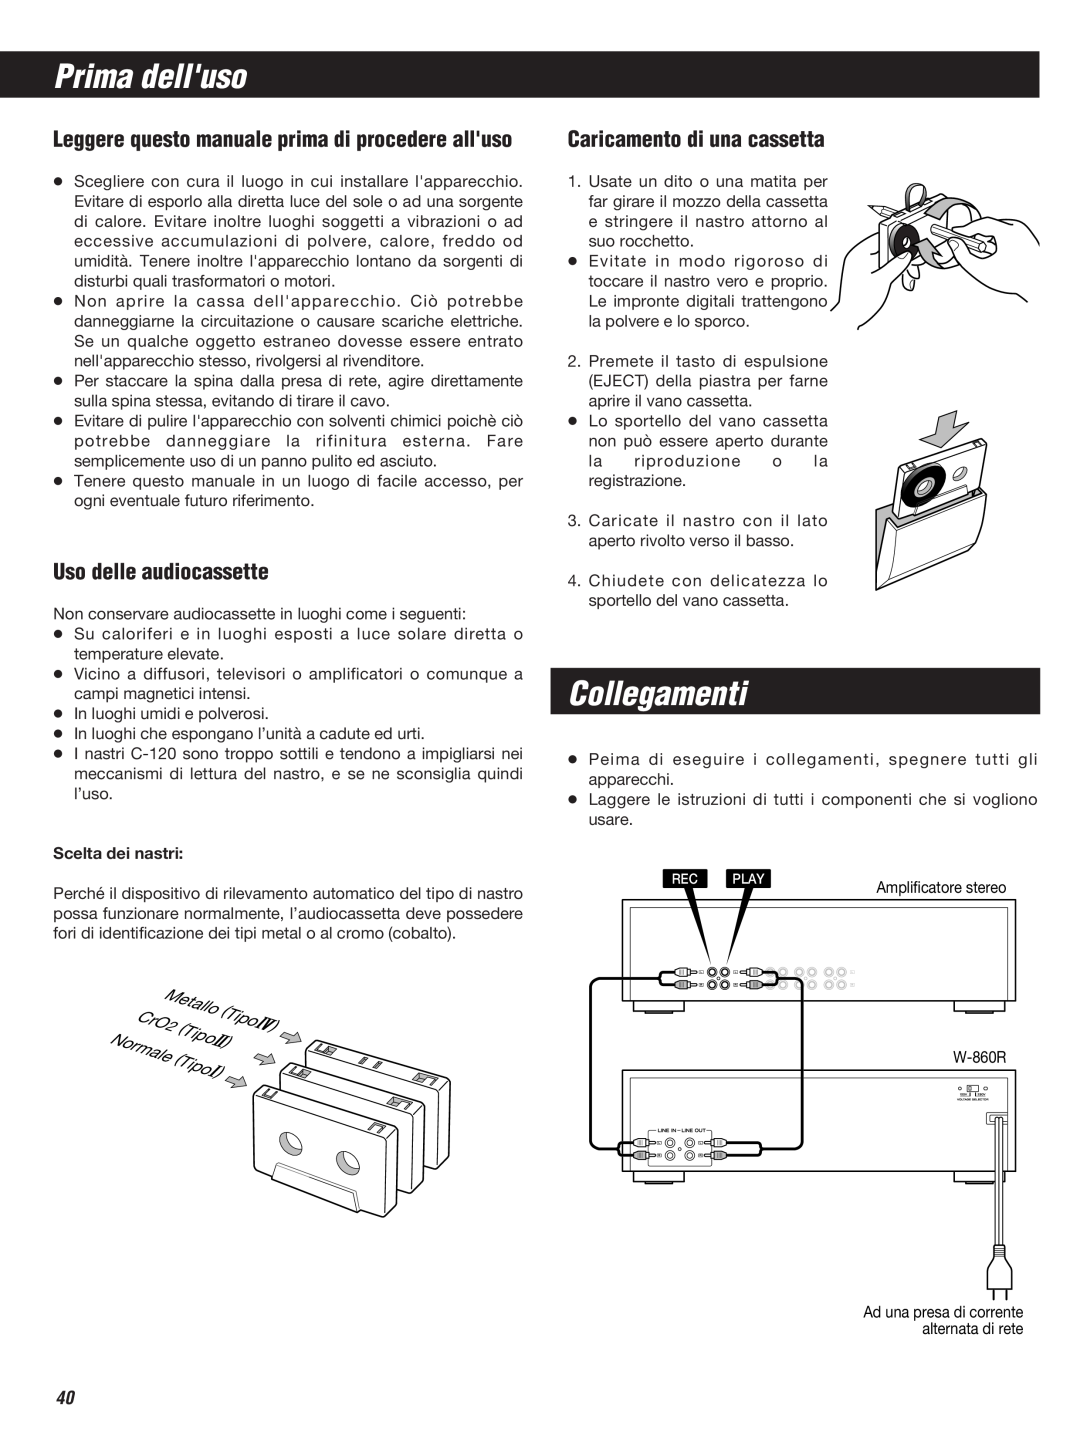 Teac W-860R owner manual Prima delluso, Collegamenti, Uso delle audiocassette, Caricamento di una cassetta 